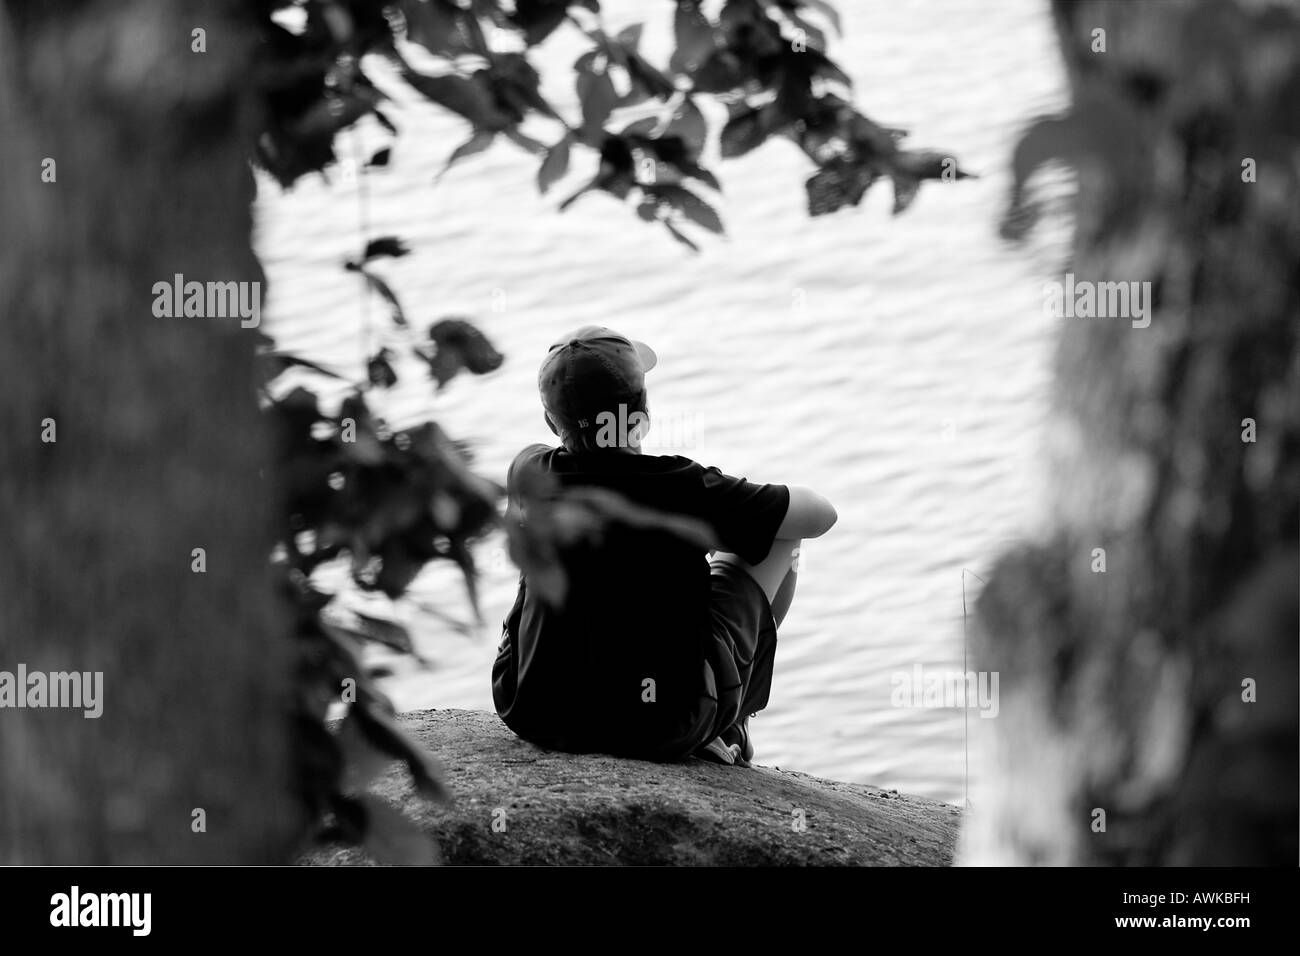 Une image en noir et blanc d'un jeune garçon est assis sur un rocher sur le rivage d'un lac, entouré par de grands arbres. Banque D'Images